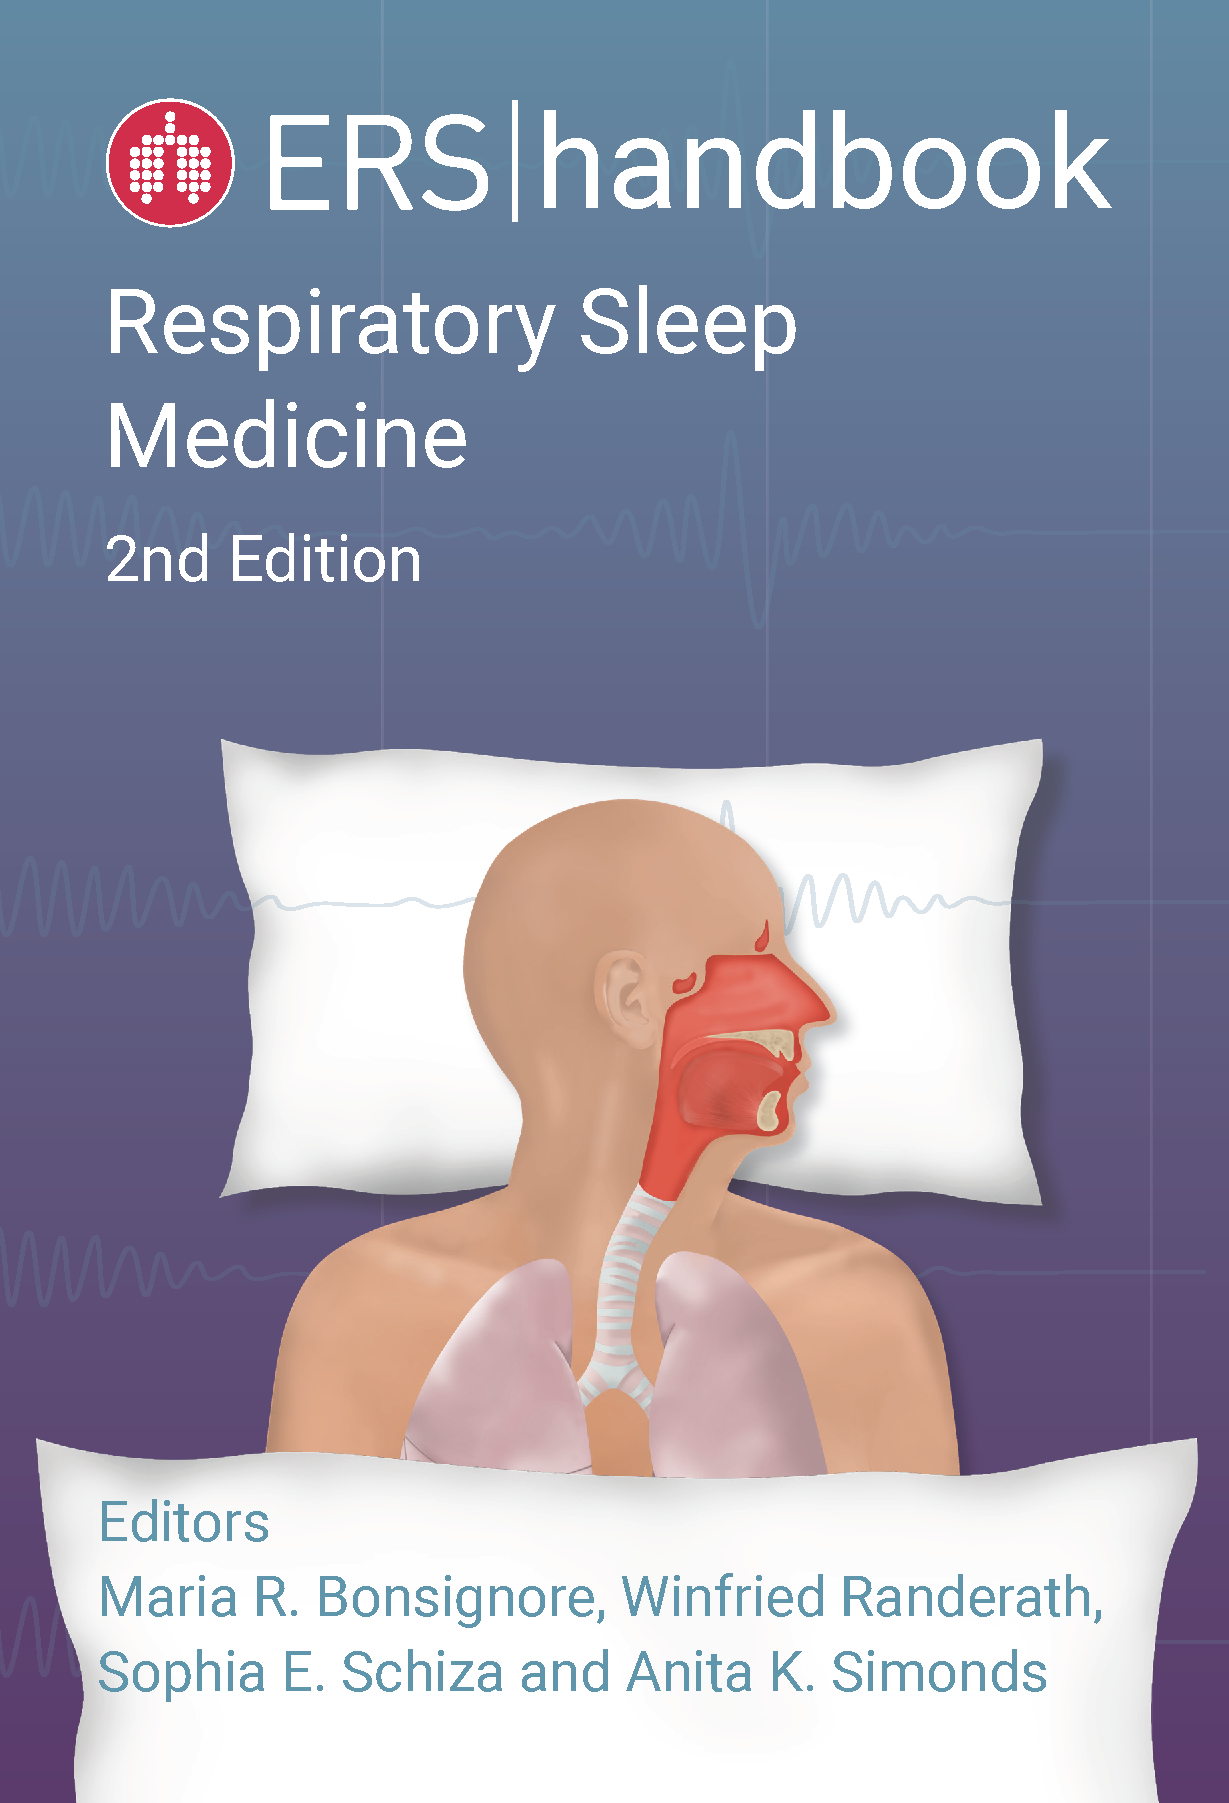 ERS Handbook of Respiratory Sleep Medicine 2nd Edition